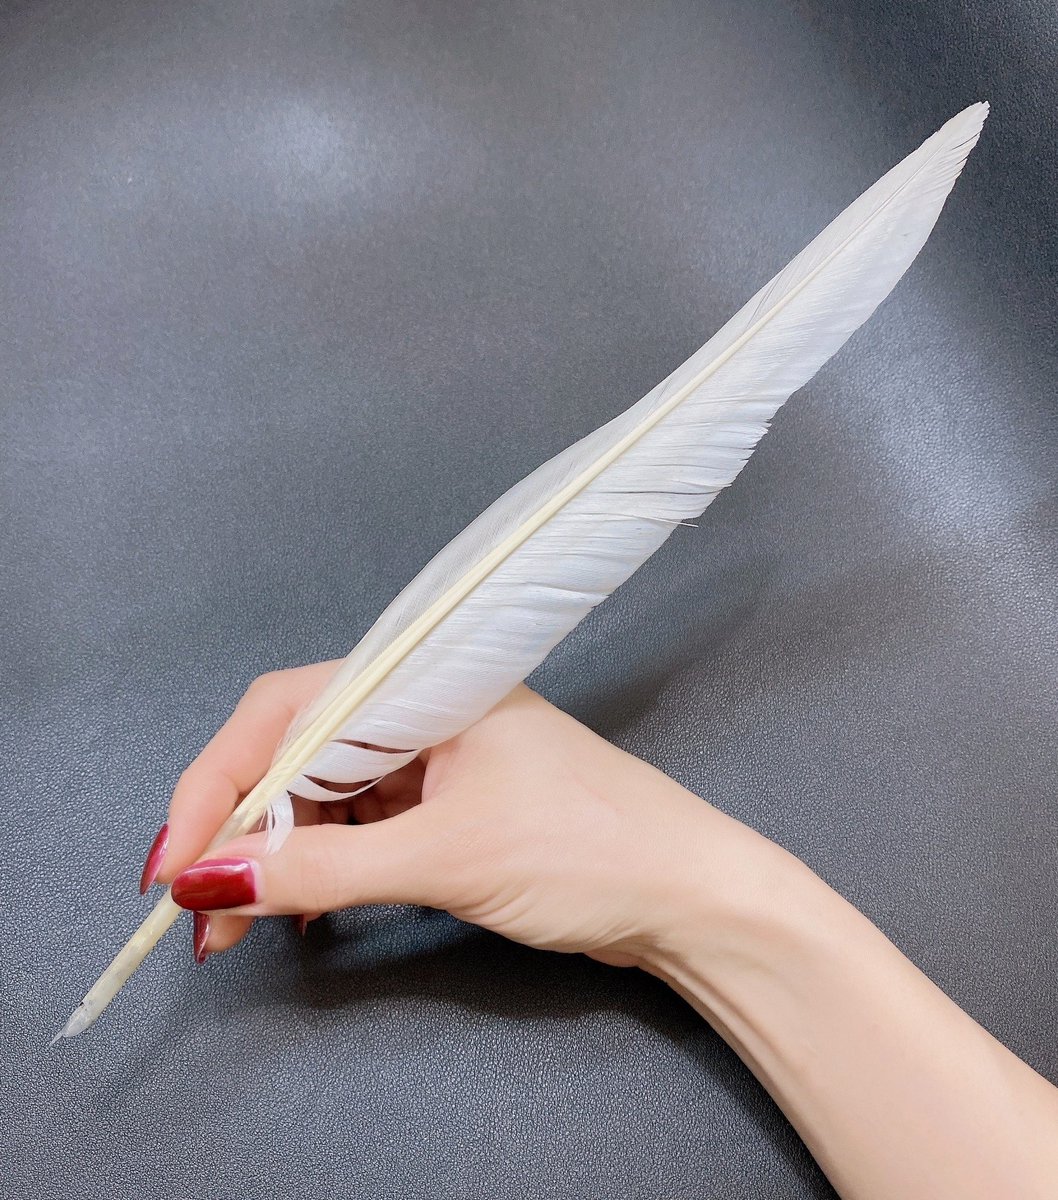 「カルチャースクールで、羽根ペンの作り方を勉強してきました 」|Samille(さみぃゆ)のイラスト